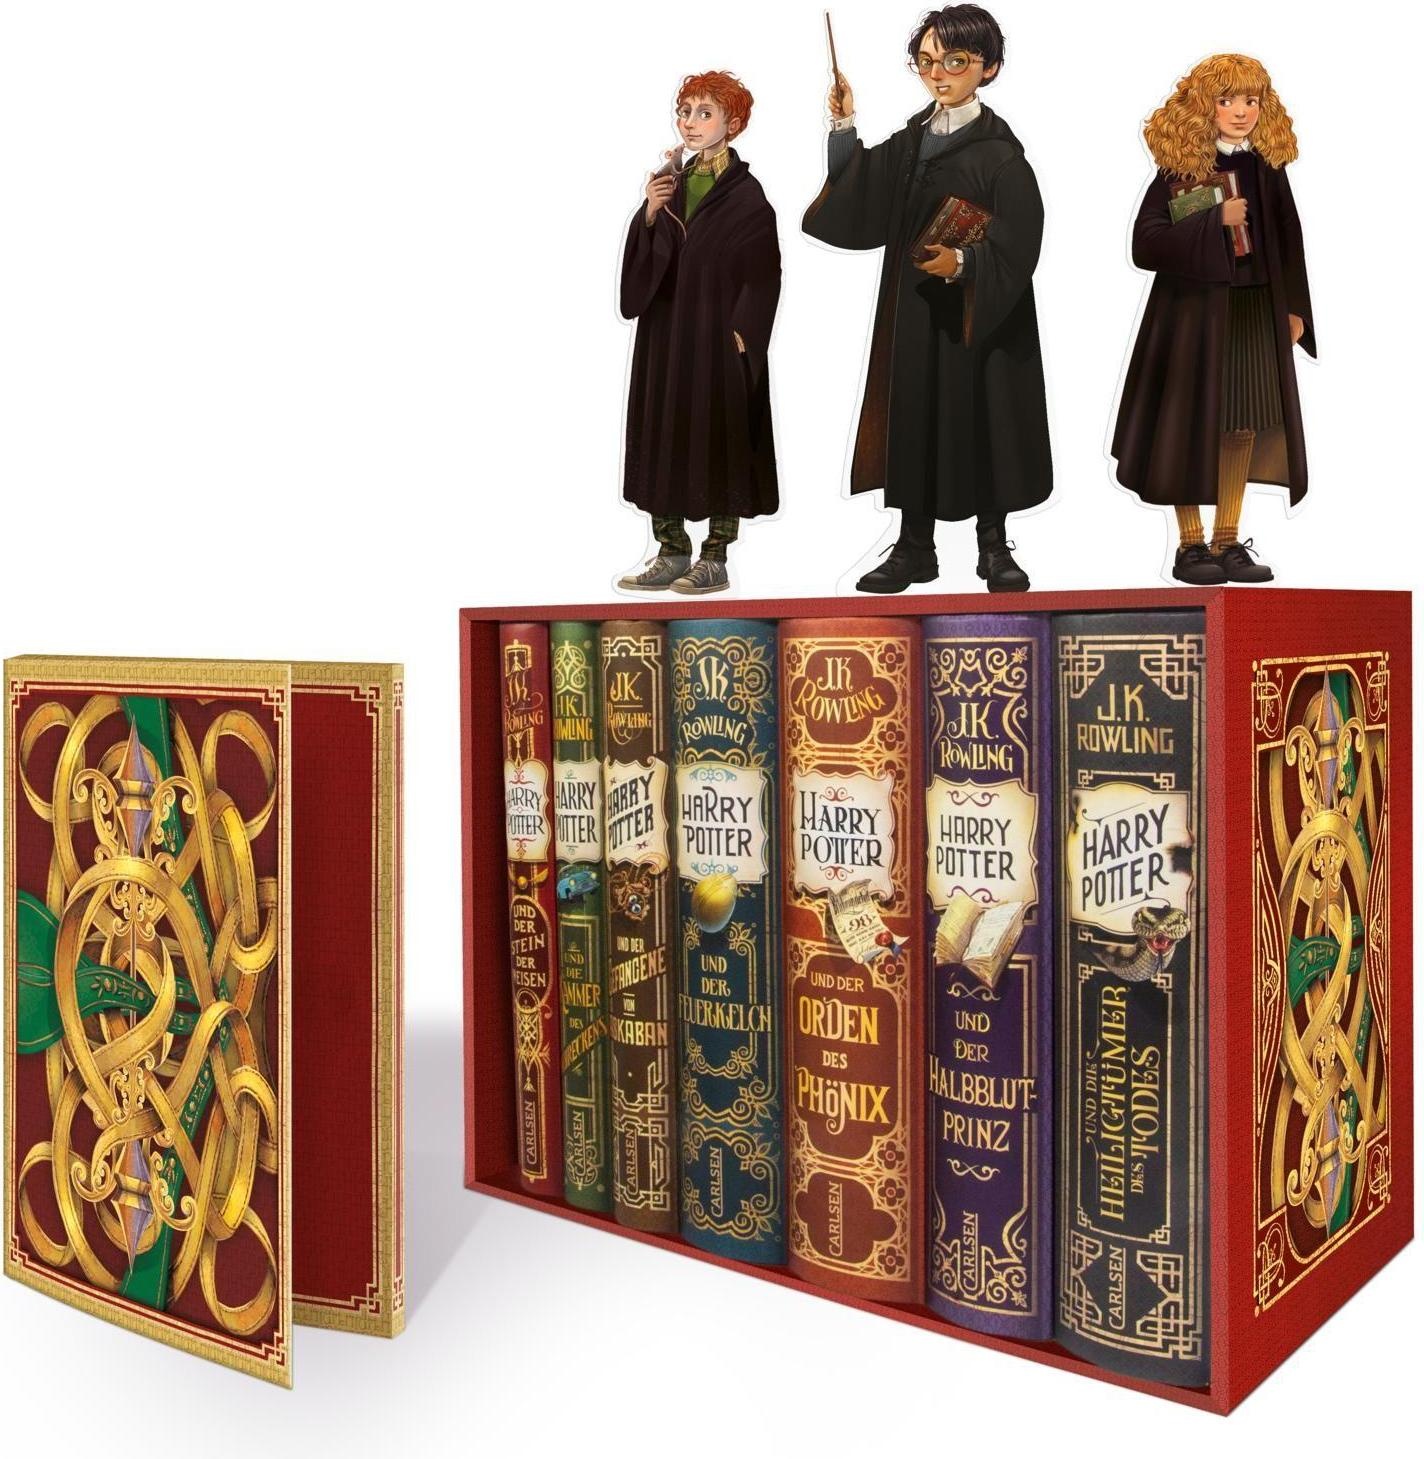 Harry Potter: Band 1-7 im Schuber - mit exklusivem Extra!, Kinderbücher von J.K. Rowling